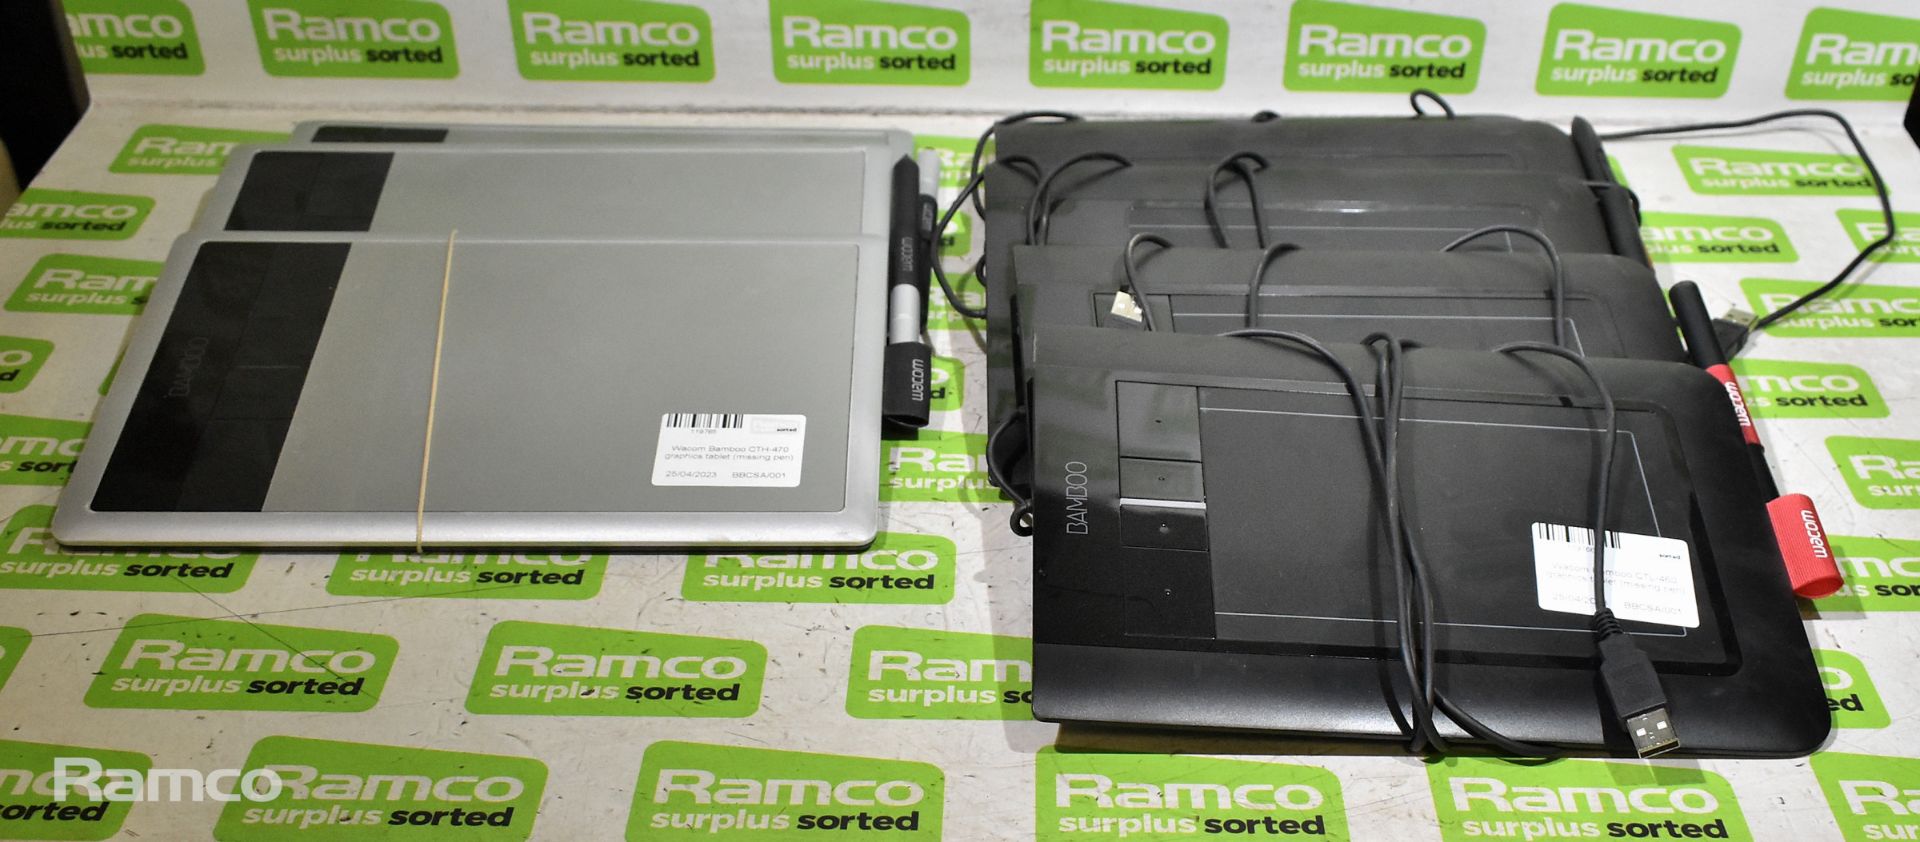 2x Wacom Bamboo CTH-470 graphics tablets, Wacom Bamboo CTH-470 graphics tablet (missing pen)